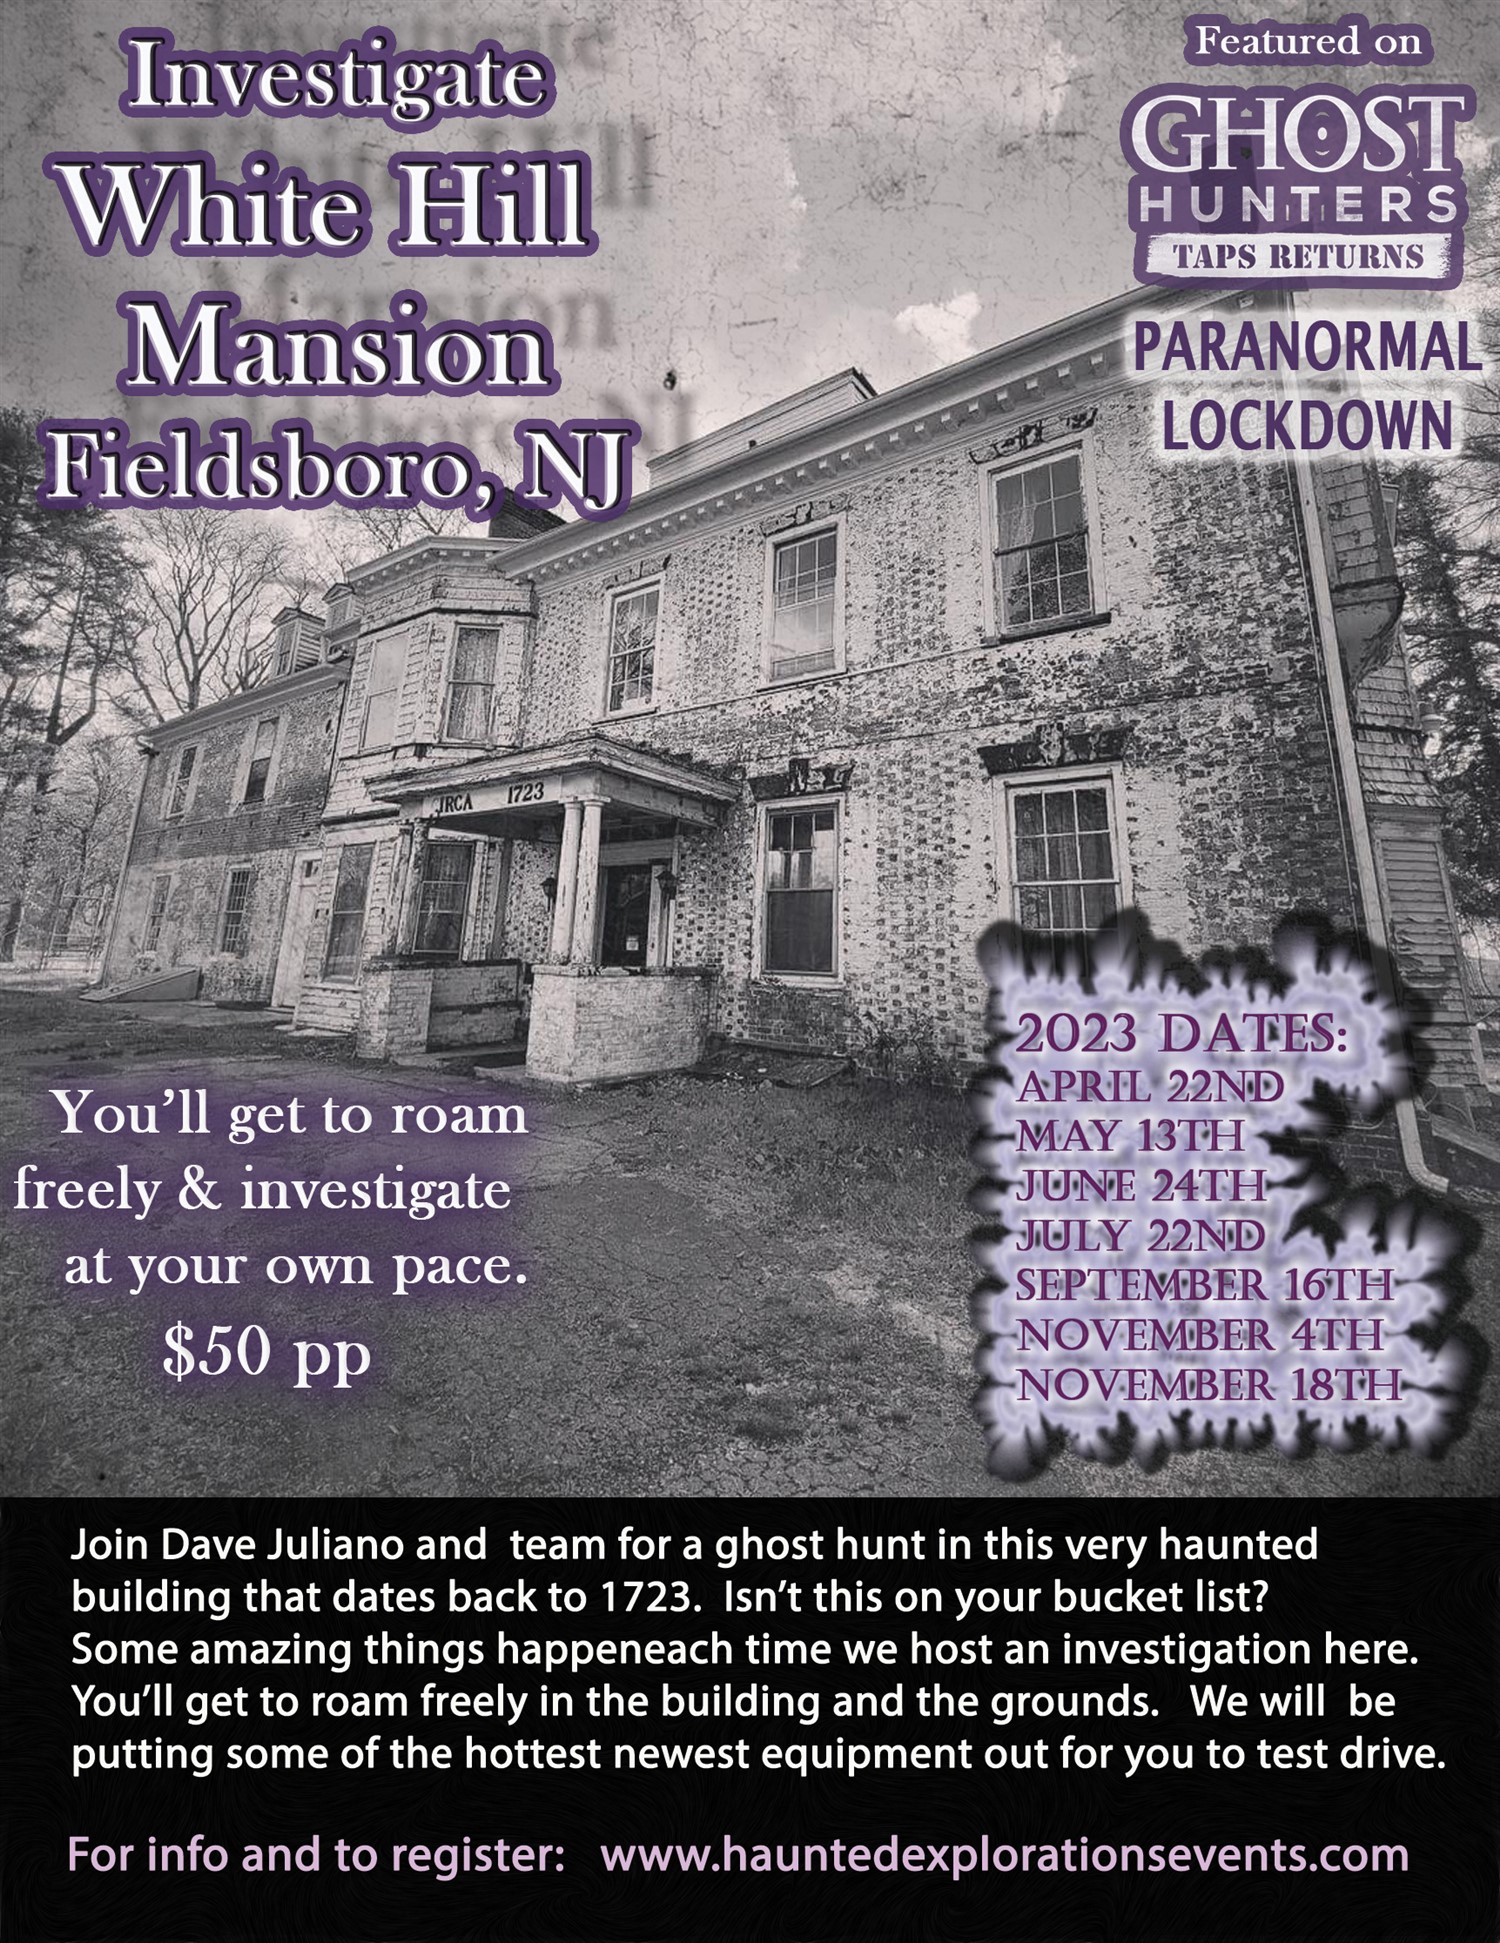 Investigate Whitehill Mansion  on jun. 24, 20:00@White Hill Mansion - Compra entradas y obtén información enThriller Events thriller.events